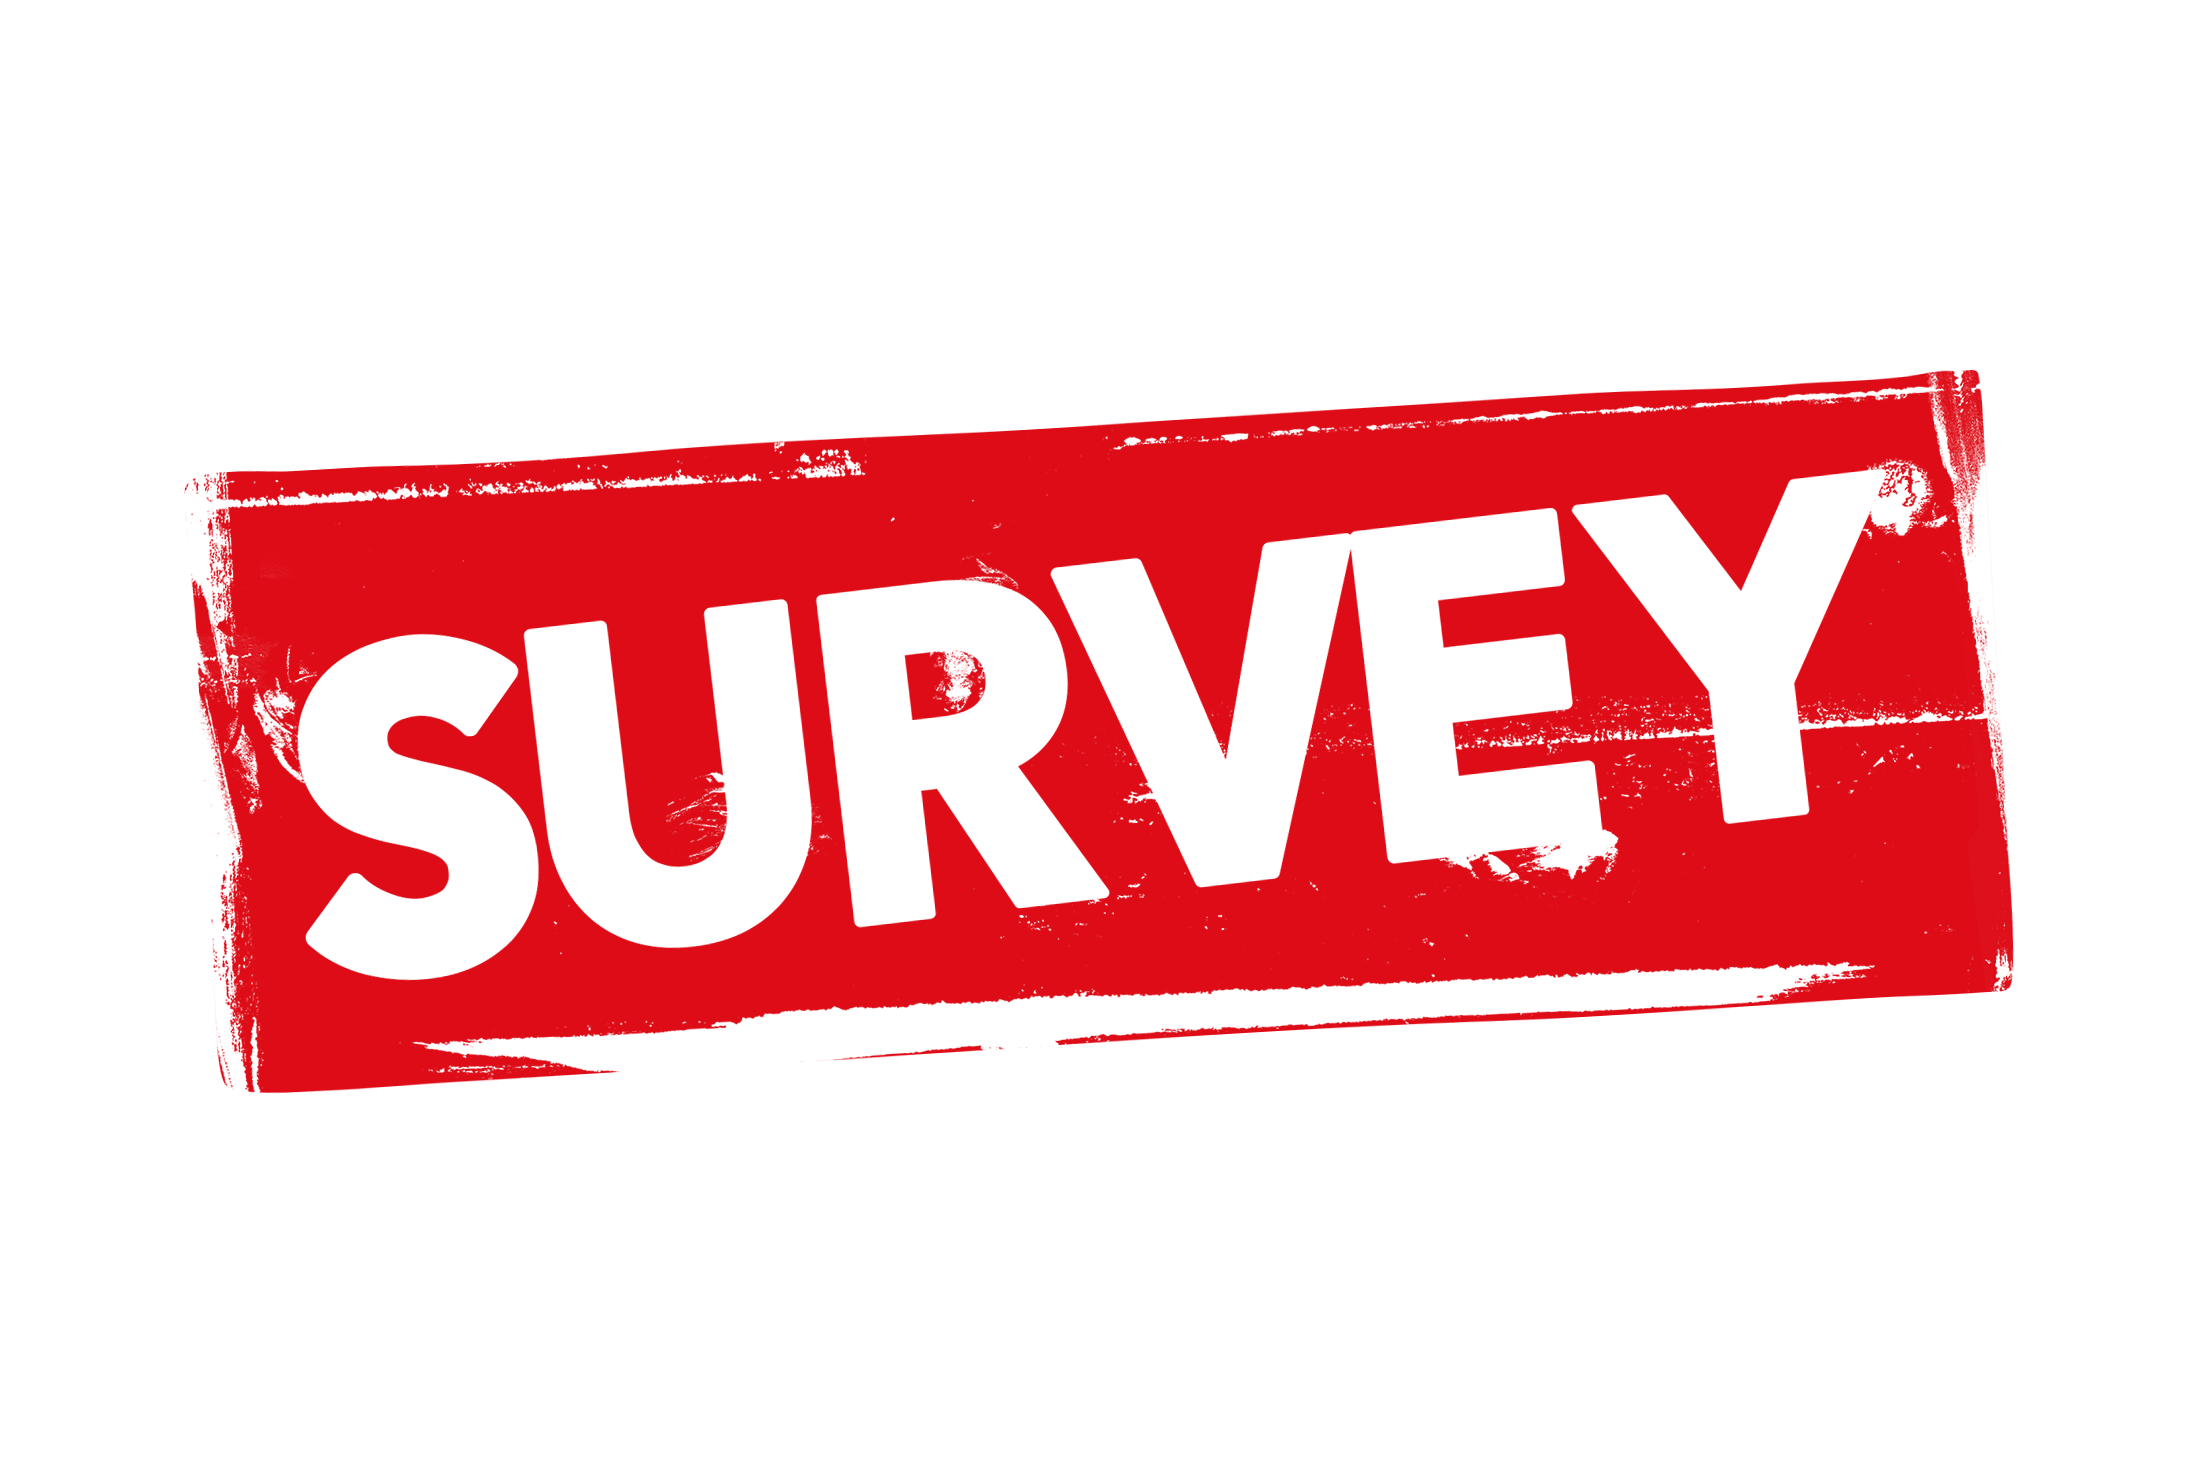 Grunge survey label PSD